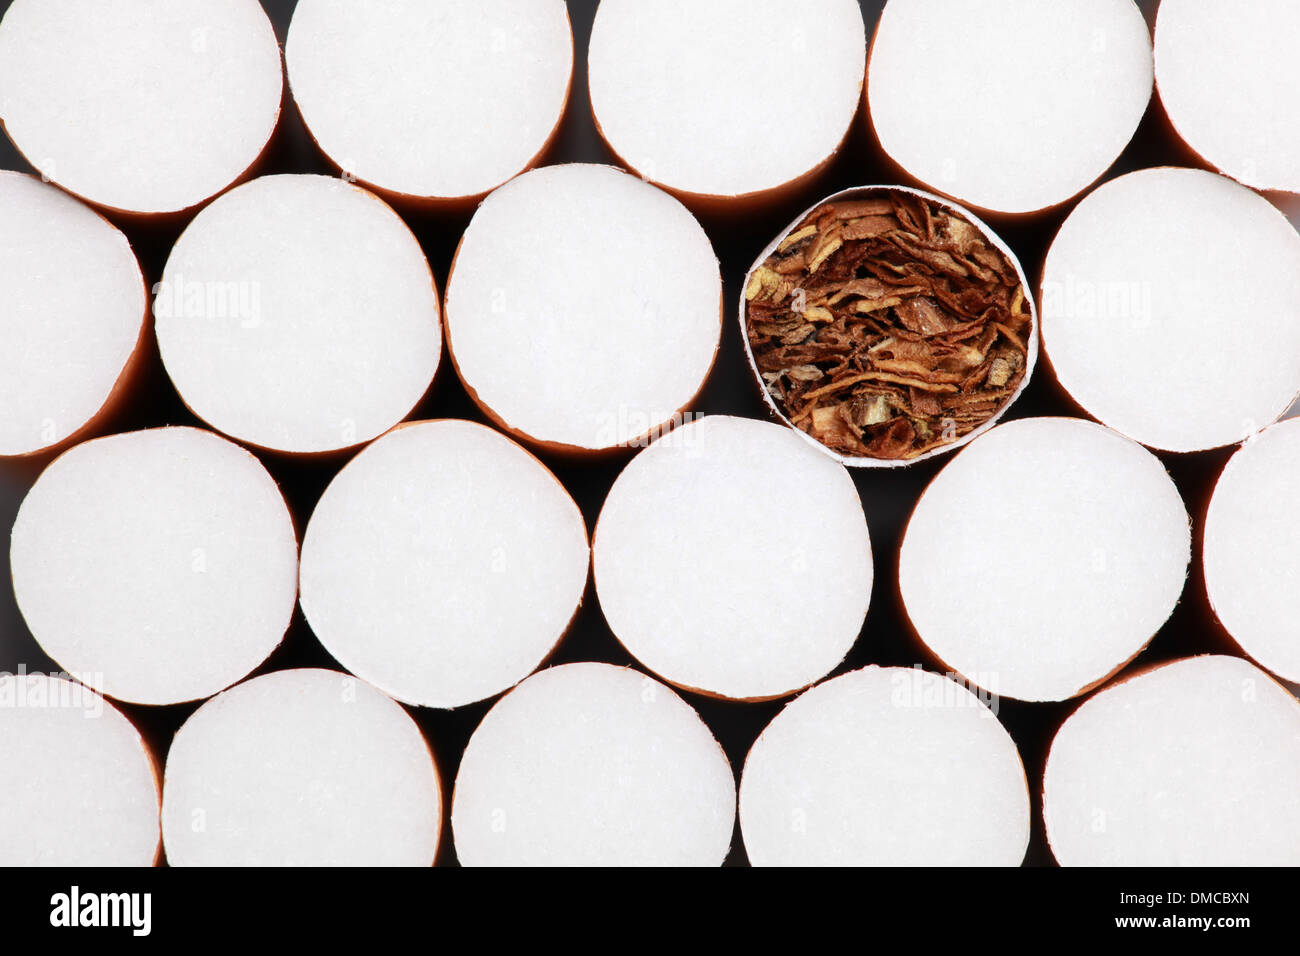 Raccolta delle sigarette con filtro formando uno sfondo Foto Stock